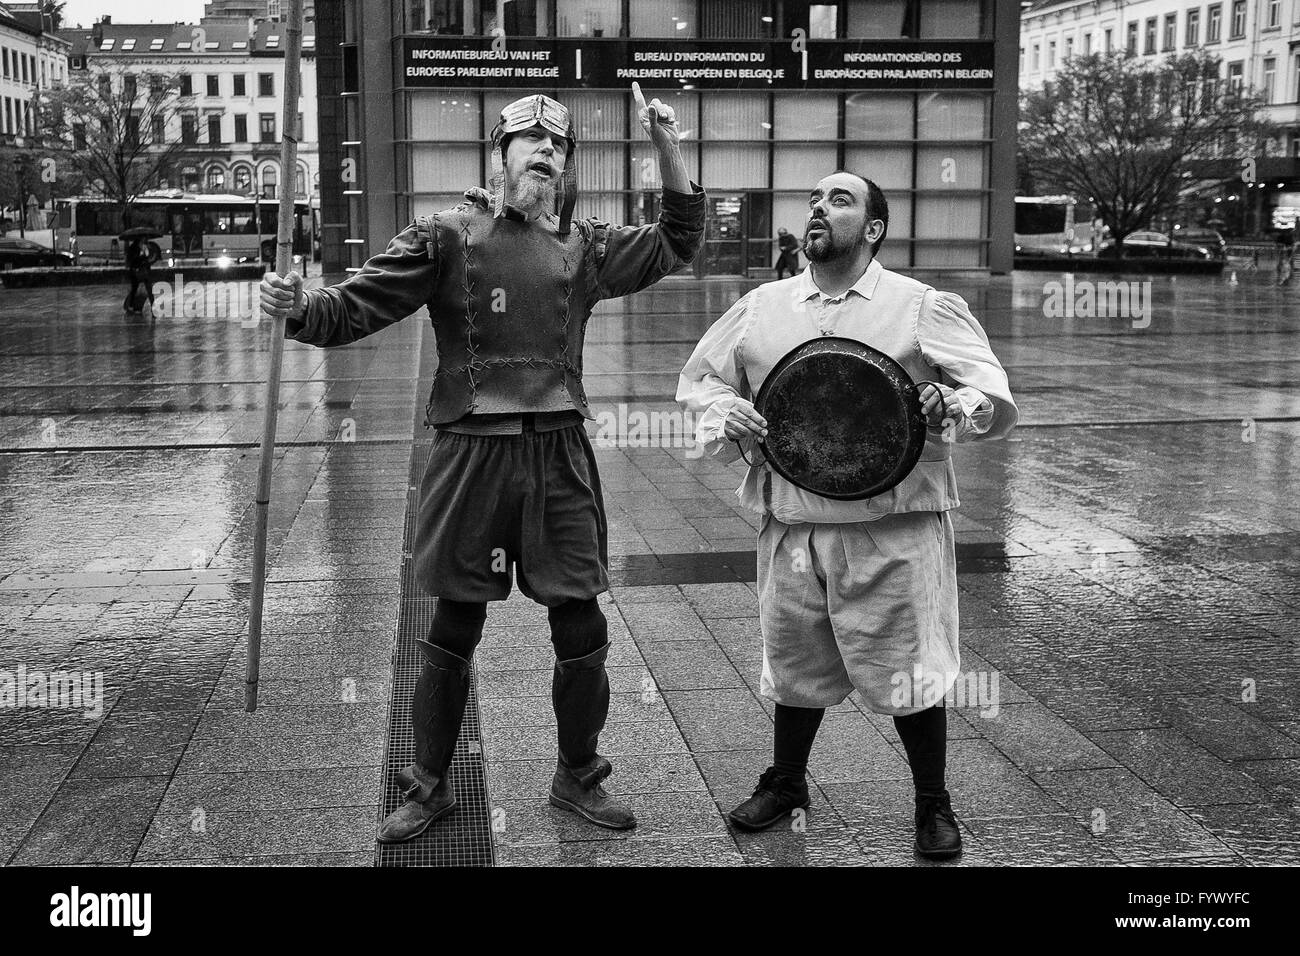 Attori giocare a Don Chisciotte e Sancho Panza, due di spagnolo autore del Cervantes personaggi di fantasia nella parte anteriore del Parlamento Europeo con sede a Bruxelles, in Belgio, il 27.04.2016 da Wiktor Dabkowski Foto Stock